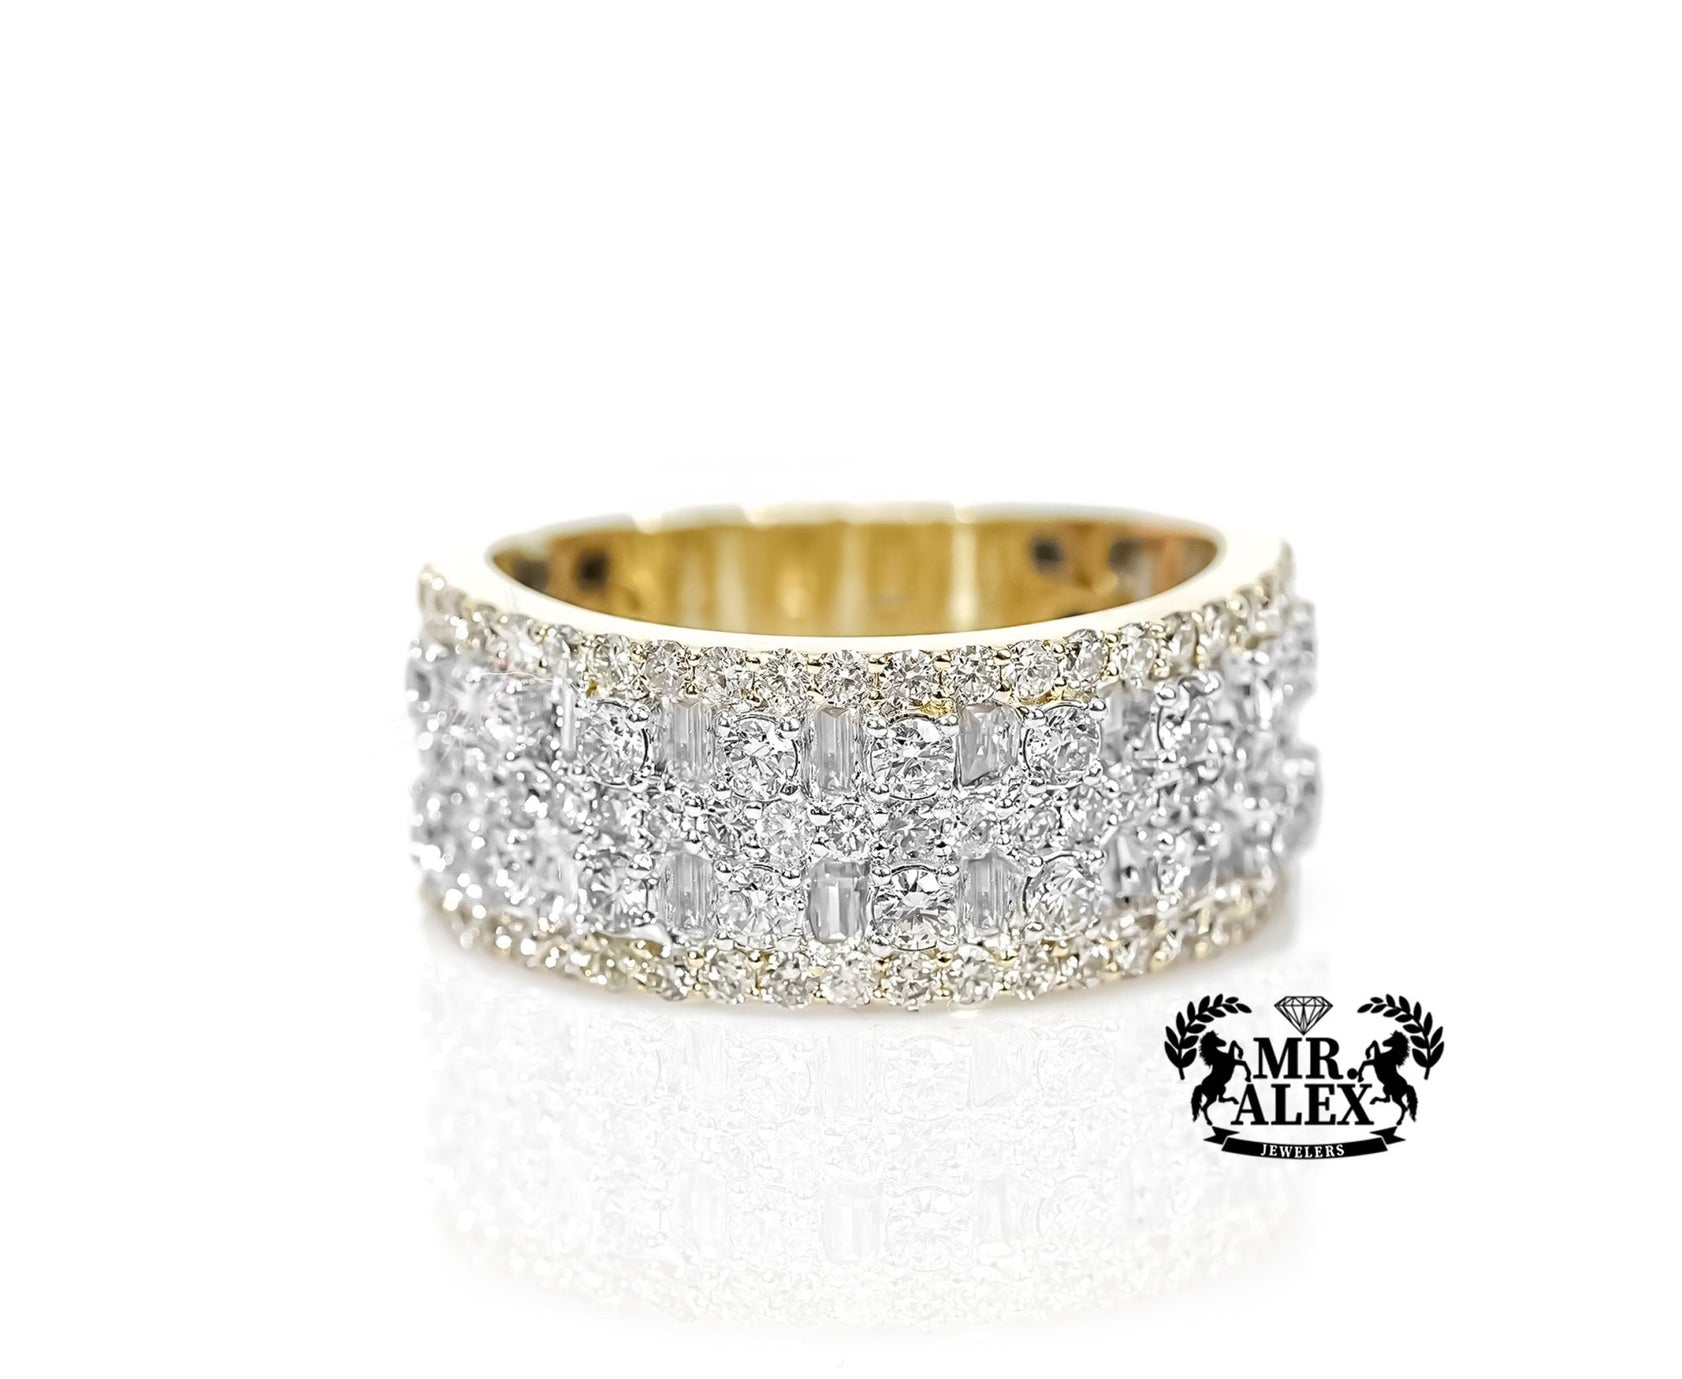 10k Gold Mixed Cut Diamond Band 2.25ct - Mr. Alex Jewelry